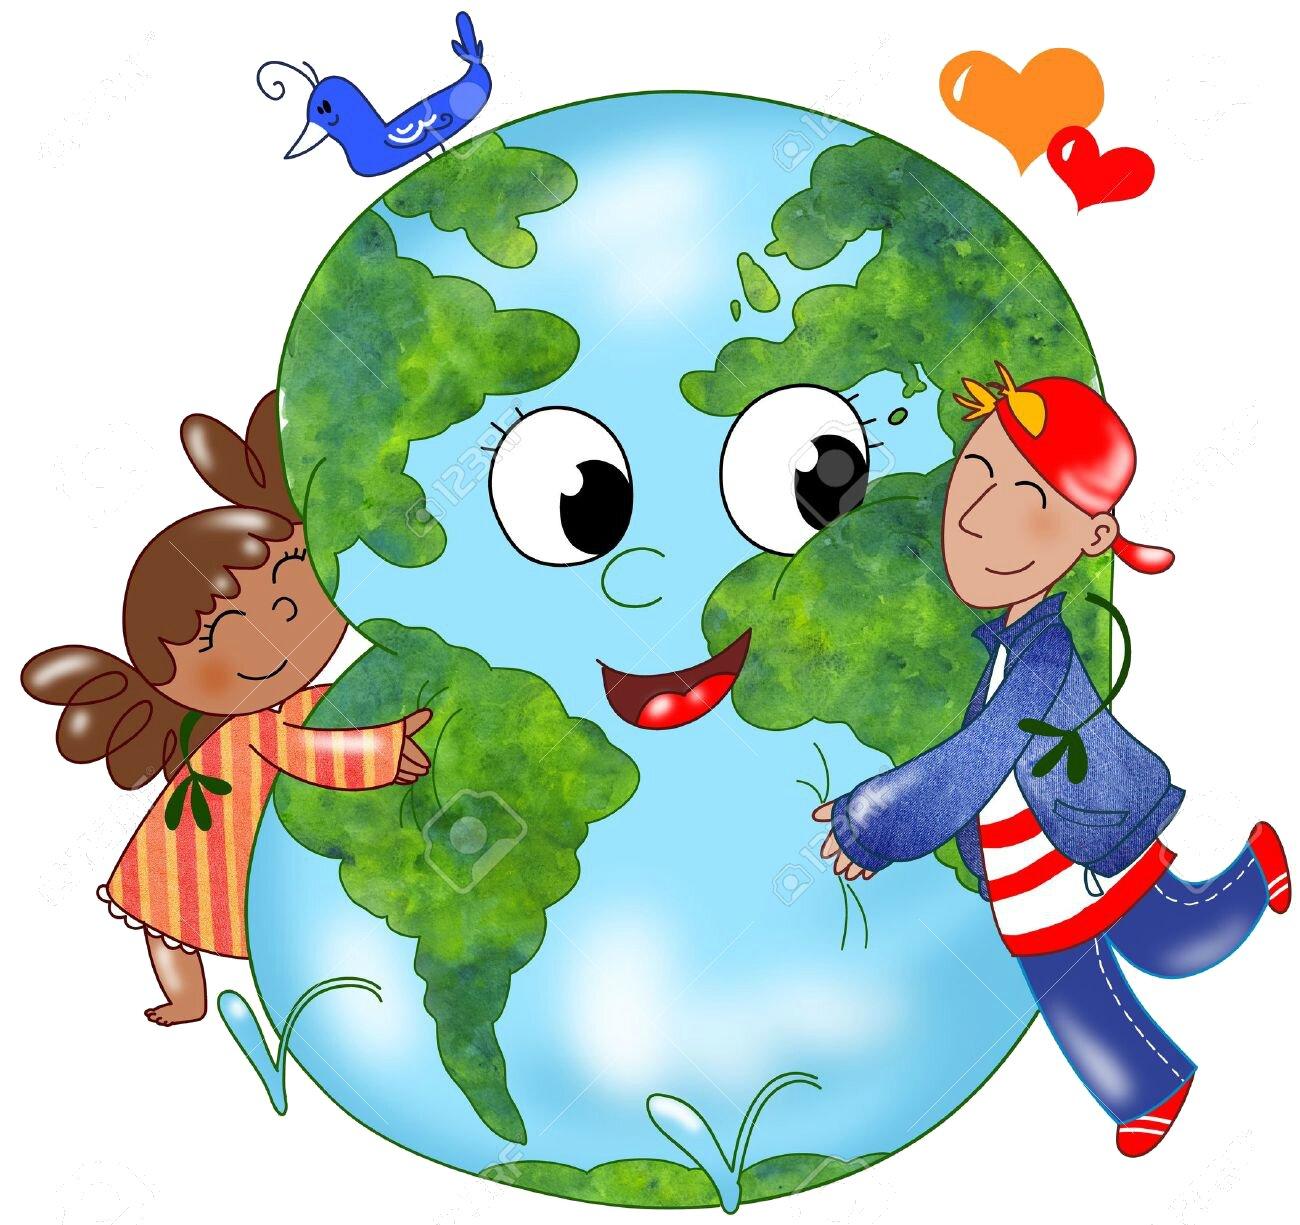 День экологического образования картинки для детей